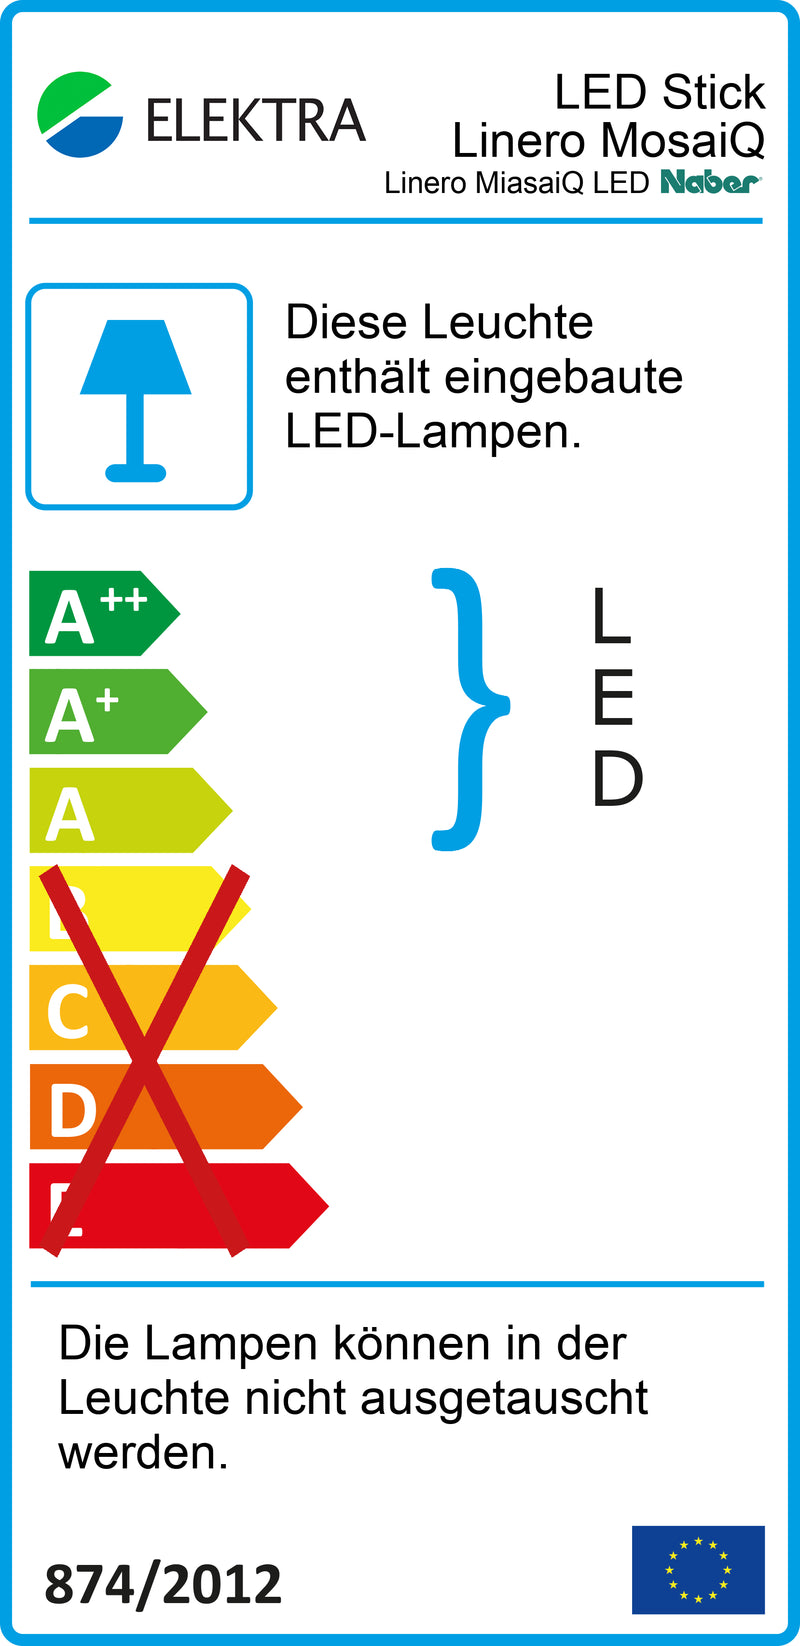 E-Label zu Linero MosaiQ LED Stripe als Variante L 900 mm von Naber GmbH in der Kategorie Nischenausstattung in Österreich auf conceptshop.at